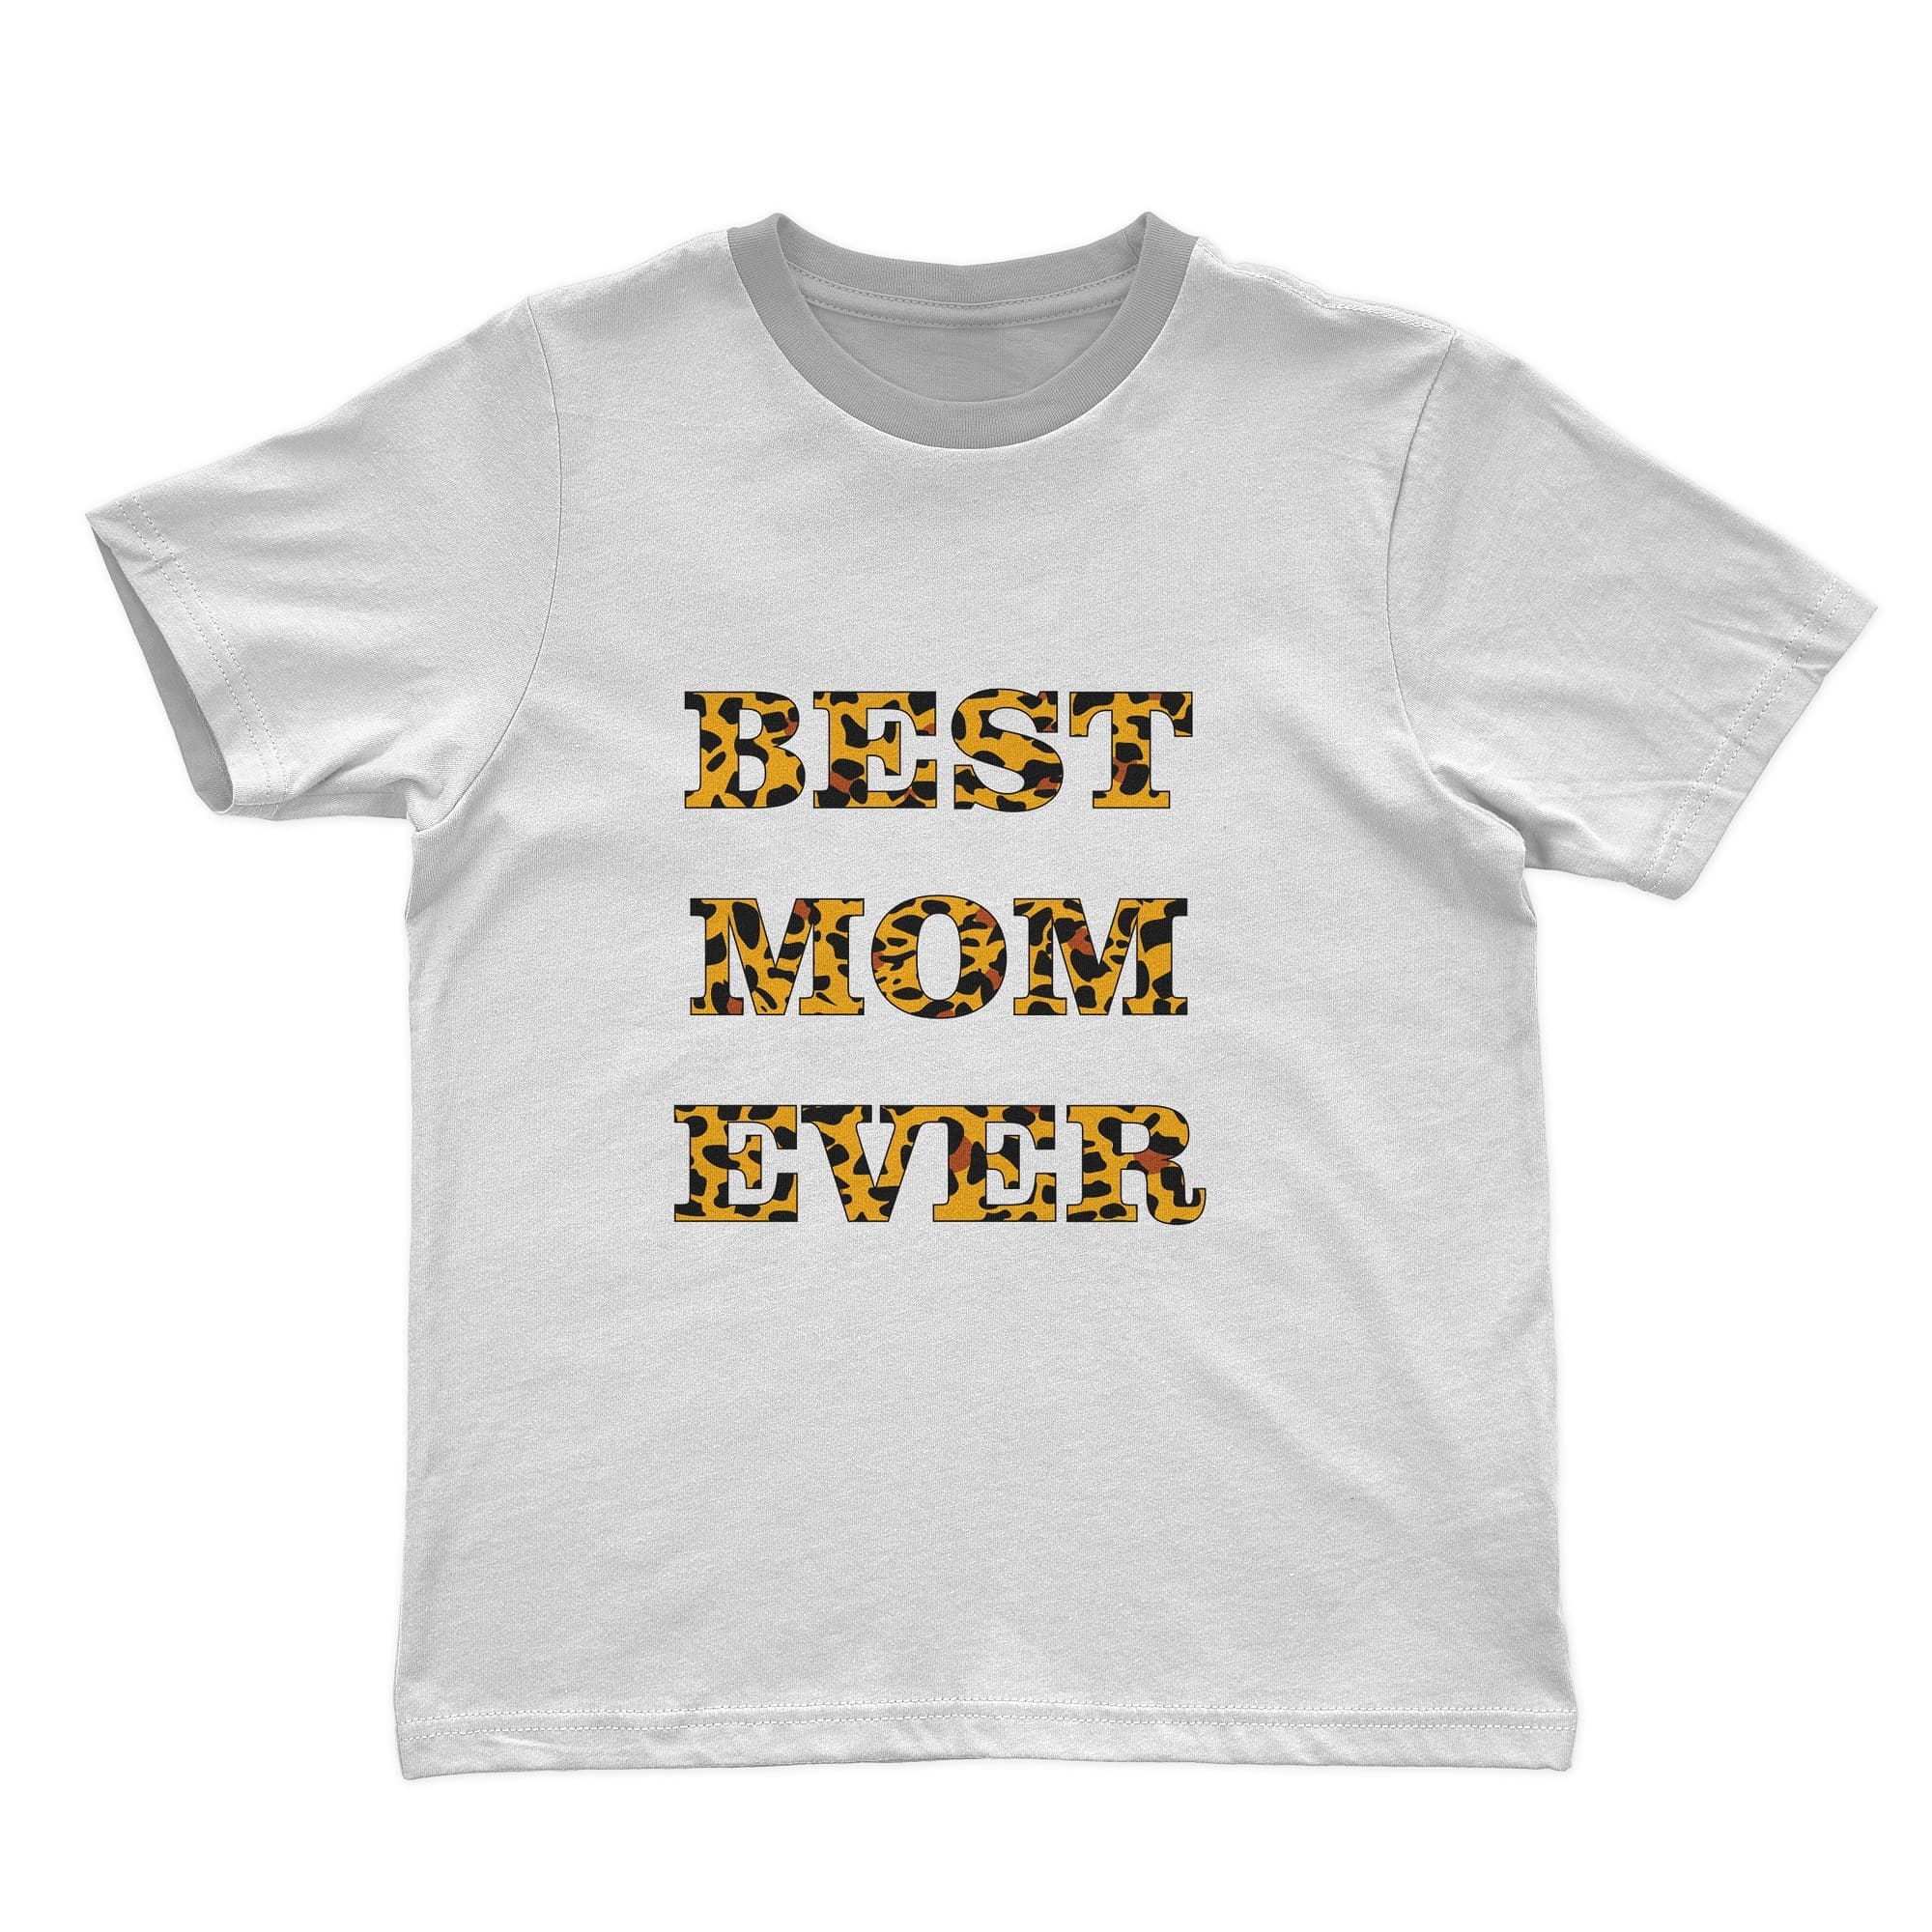 Leopard mom logo on white "Best Mom Ever" t-shirt.